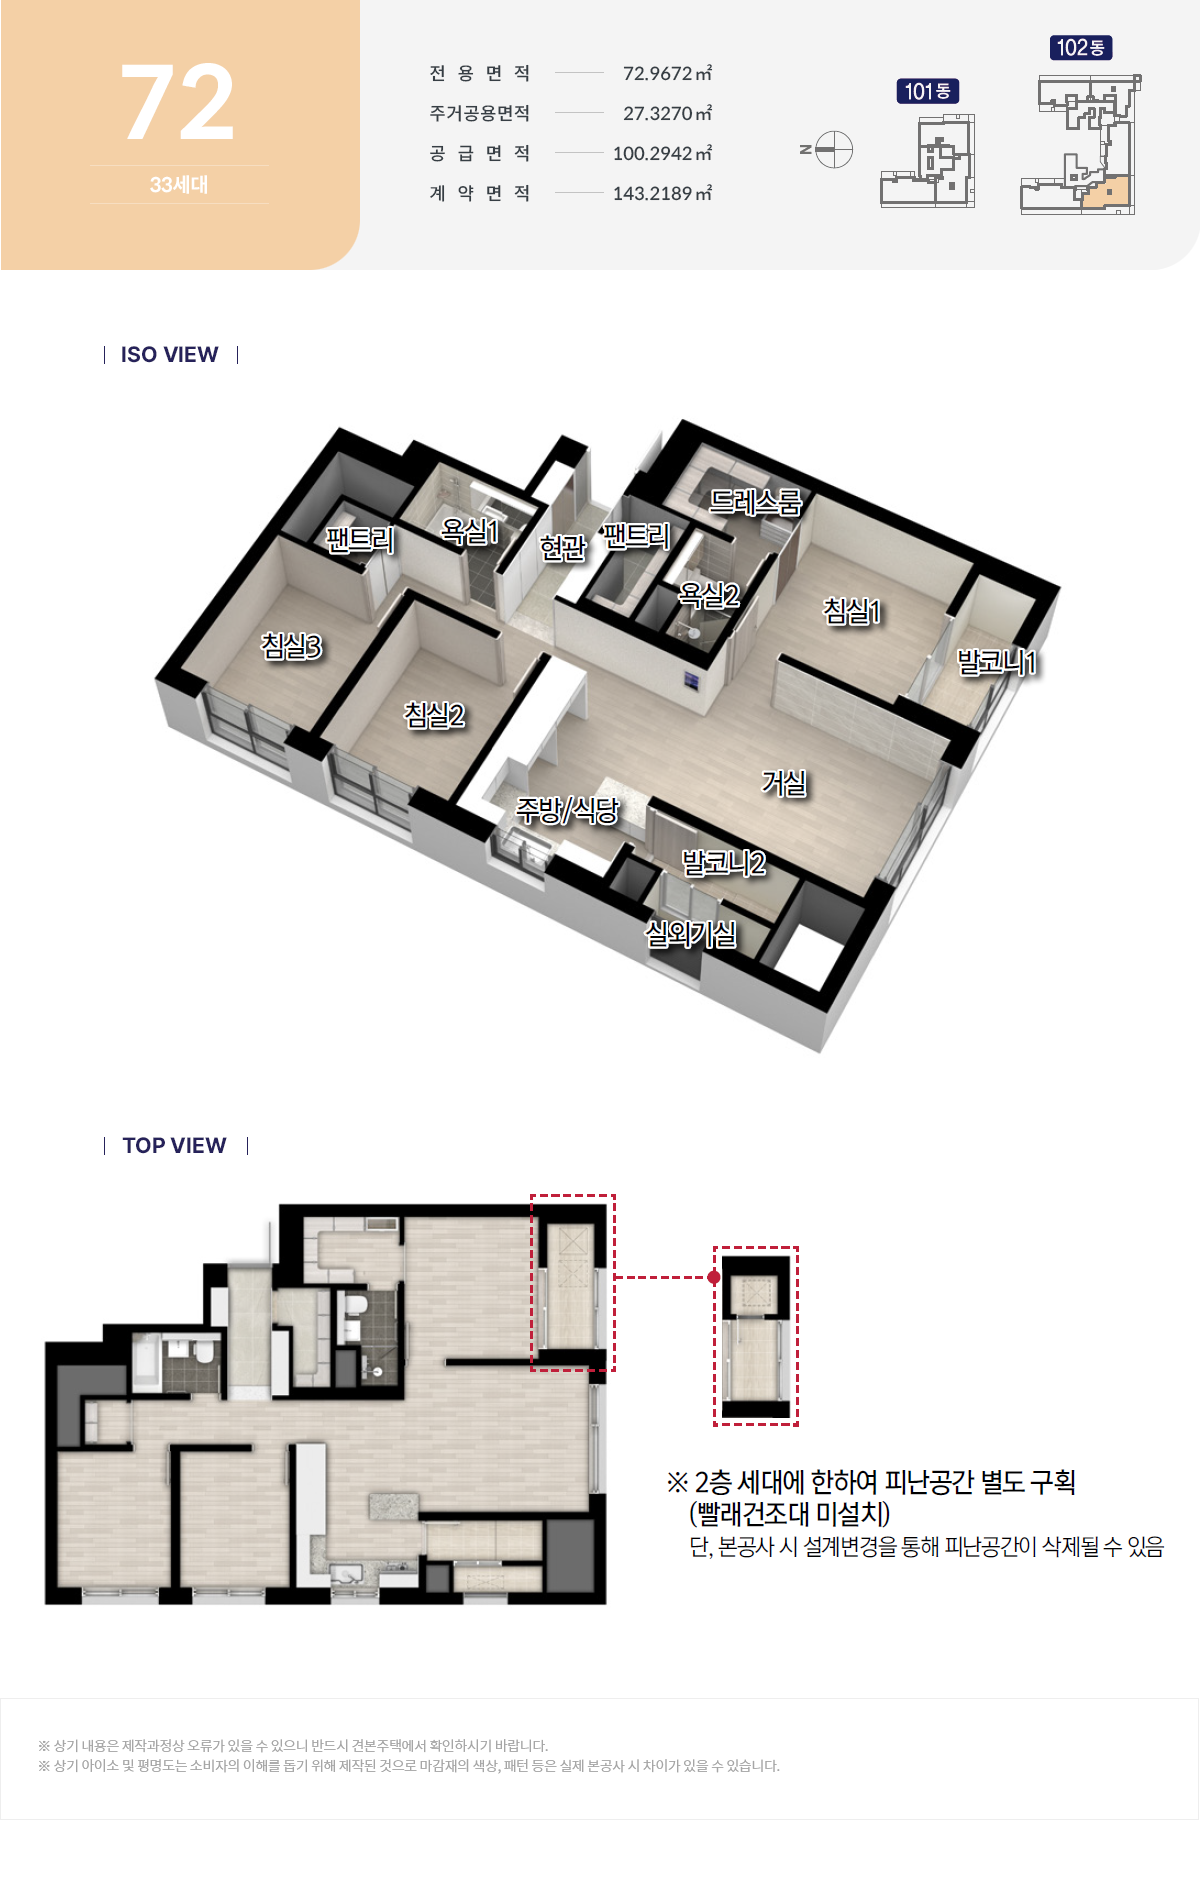 두산위브더제니스 센트럴 양정 아파트-주택형안내-72